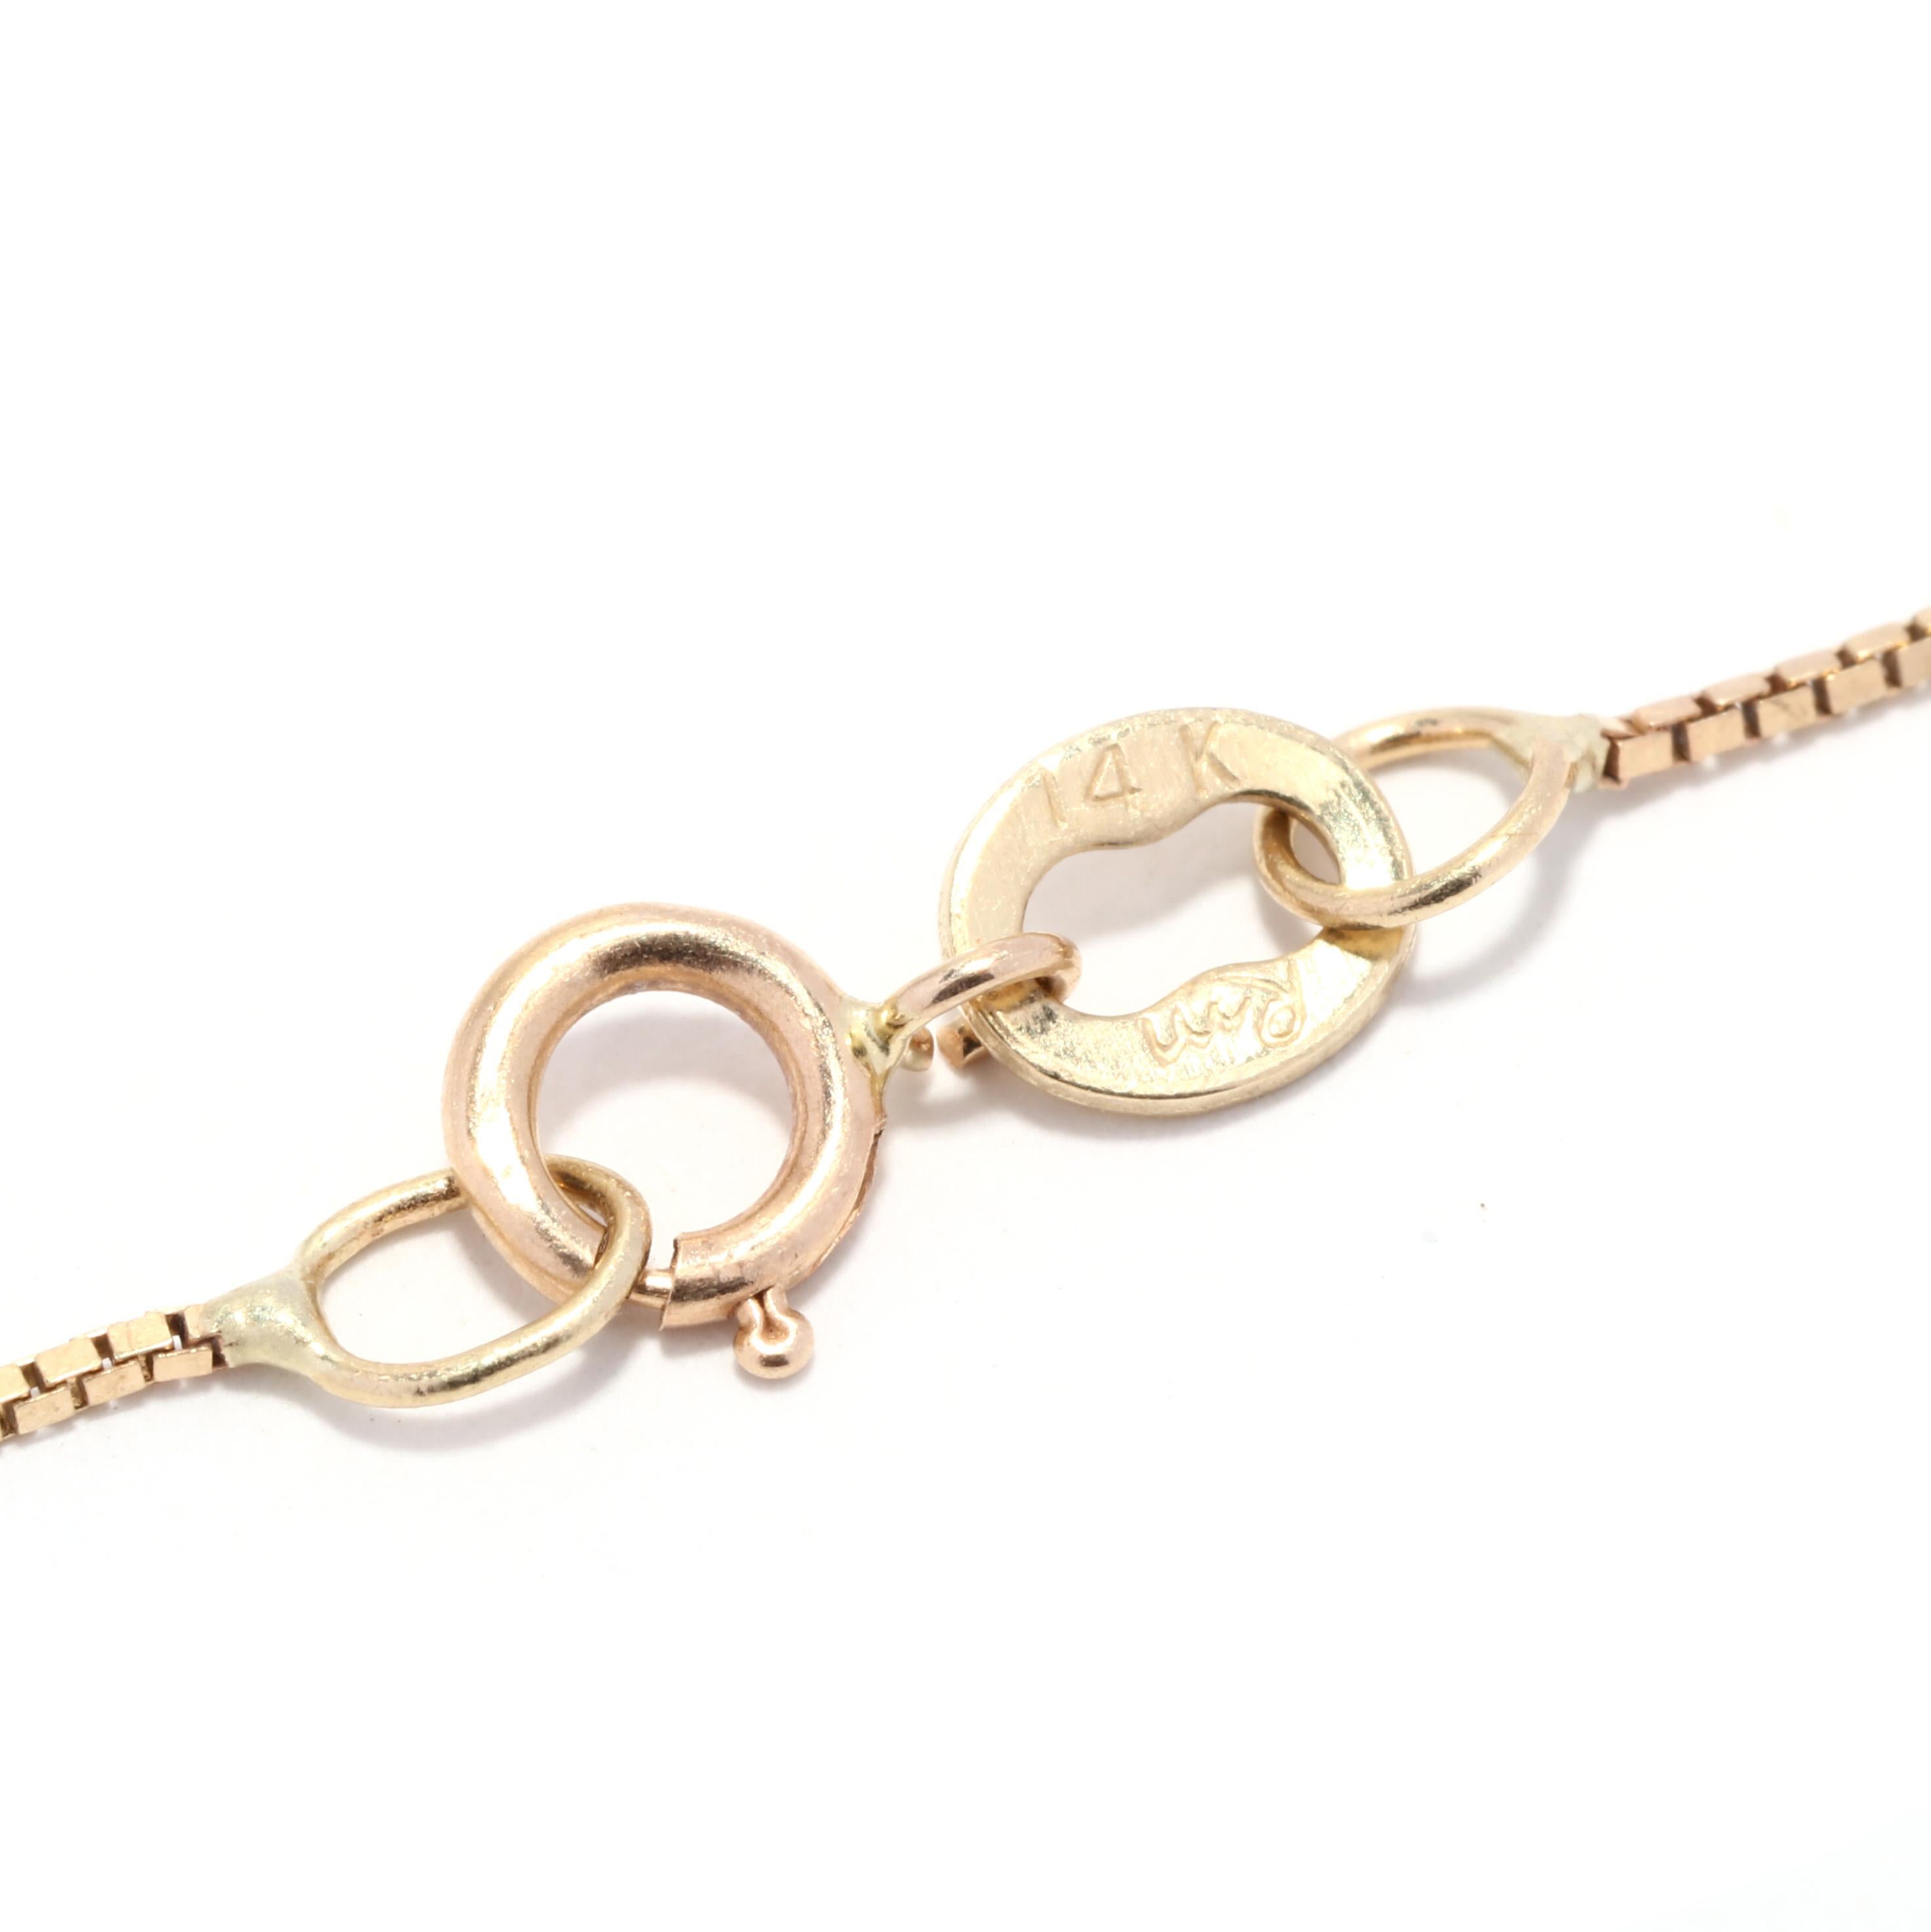 Diese atemberaubende Solitär-Halskette mit einem Diamanten von 0,25 ct ist ein elegantes und zeitloses Stück für jede Kollektion. Dieses Schmuckstück aus 14-karätigem Gelb- und Weißgold verfügt über einen schlichten, schimmernden Diamantanhänger,